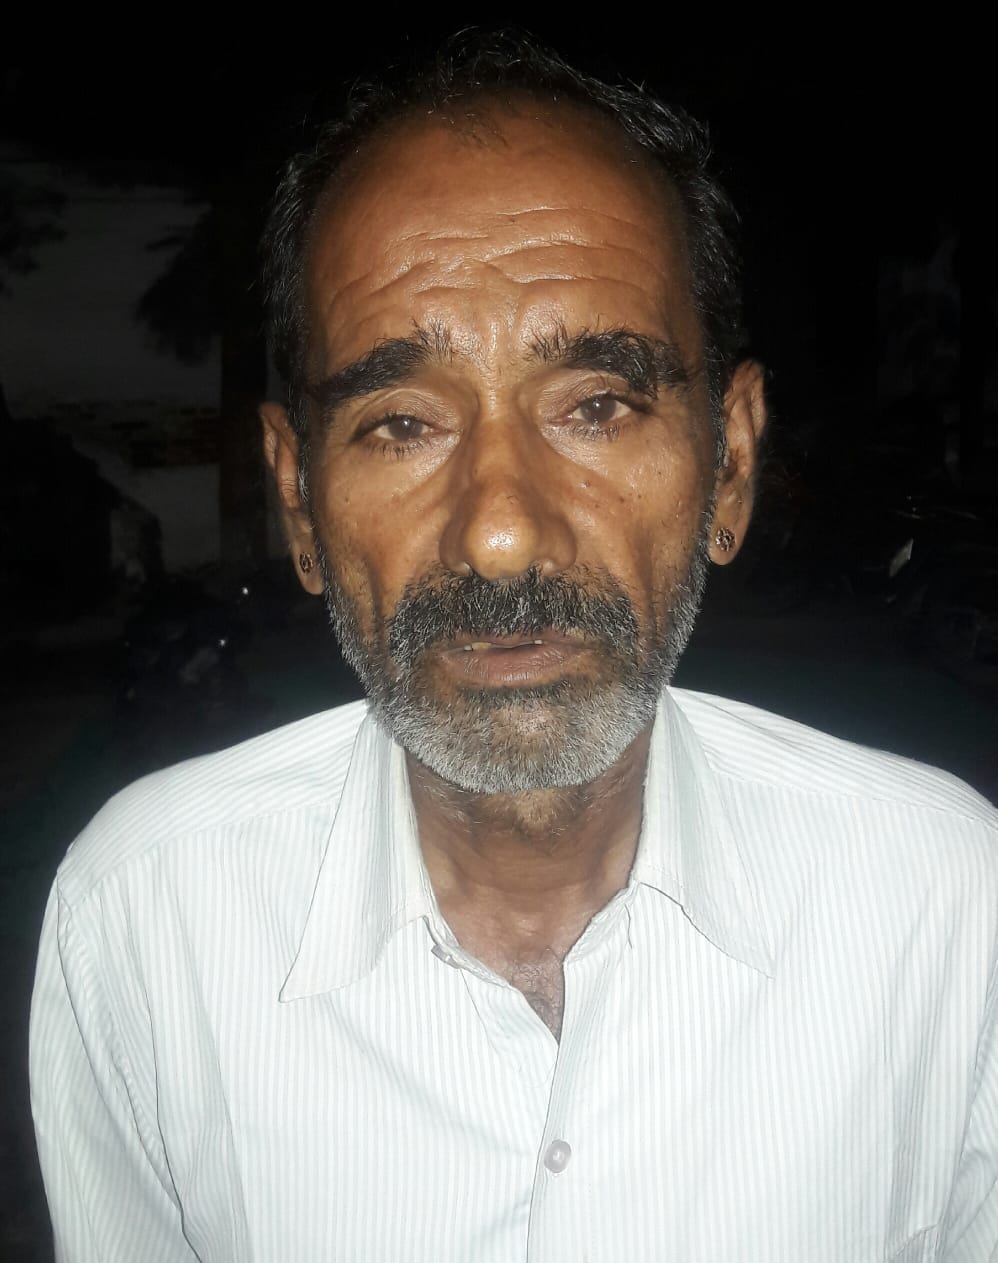 Swaroopganj was hidden in a stove, accused of Poko